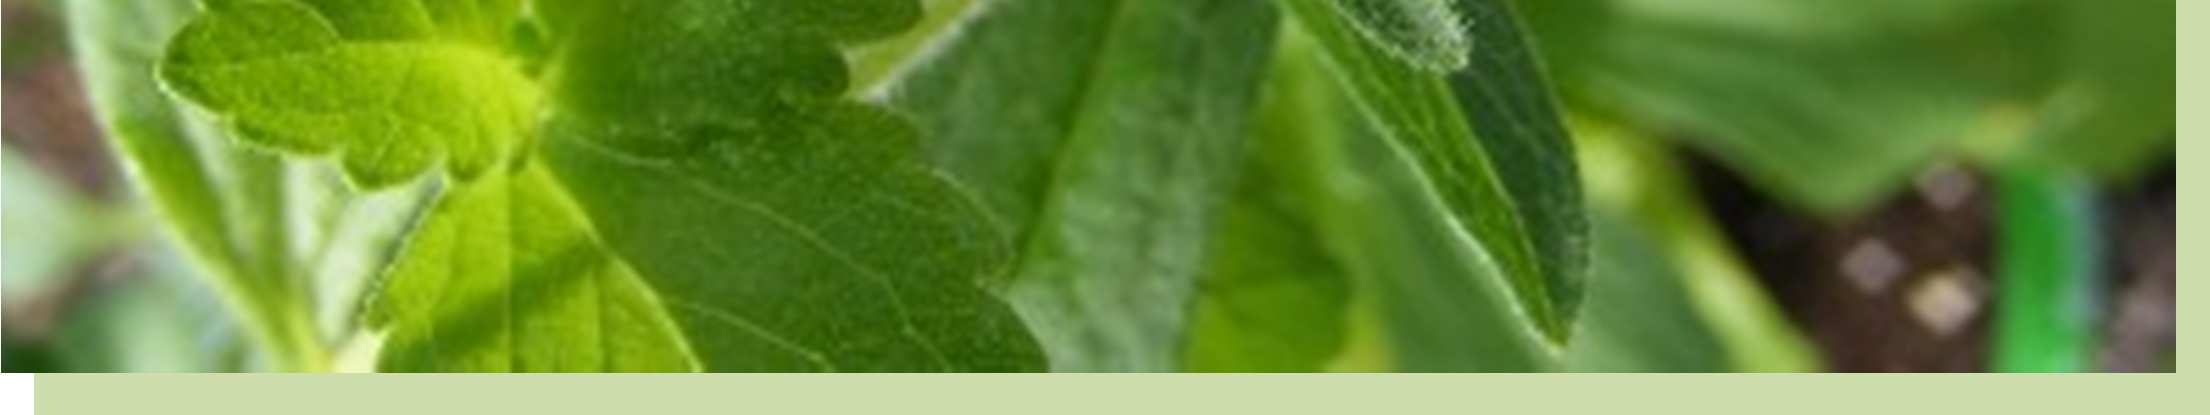 Στέβια, η ζάχαρη του µέλλοντος Εικόνα 4. Τα ανοιχτοπράσινα, οδοντωτά φύλλα της Στέβιας (Catesnutrition.